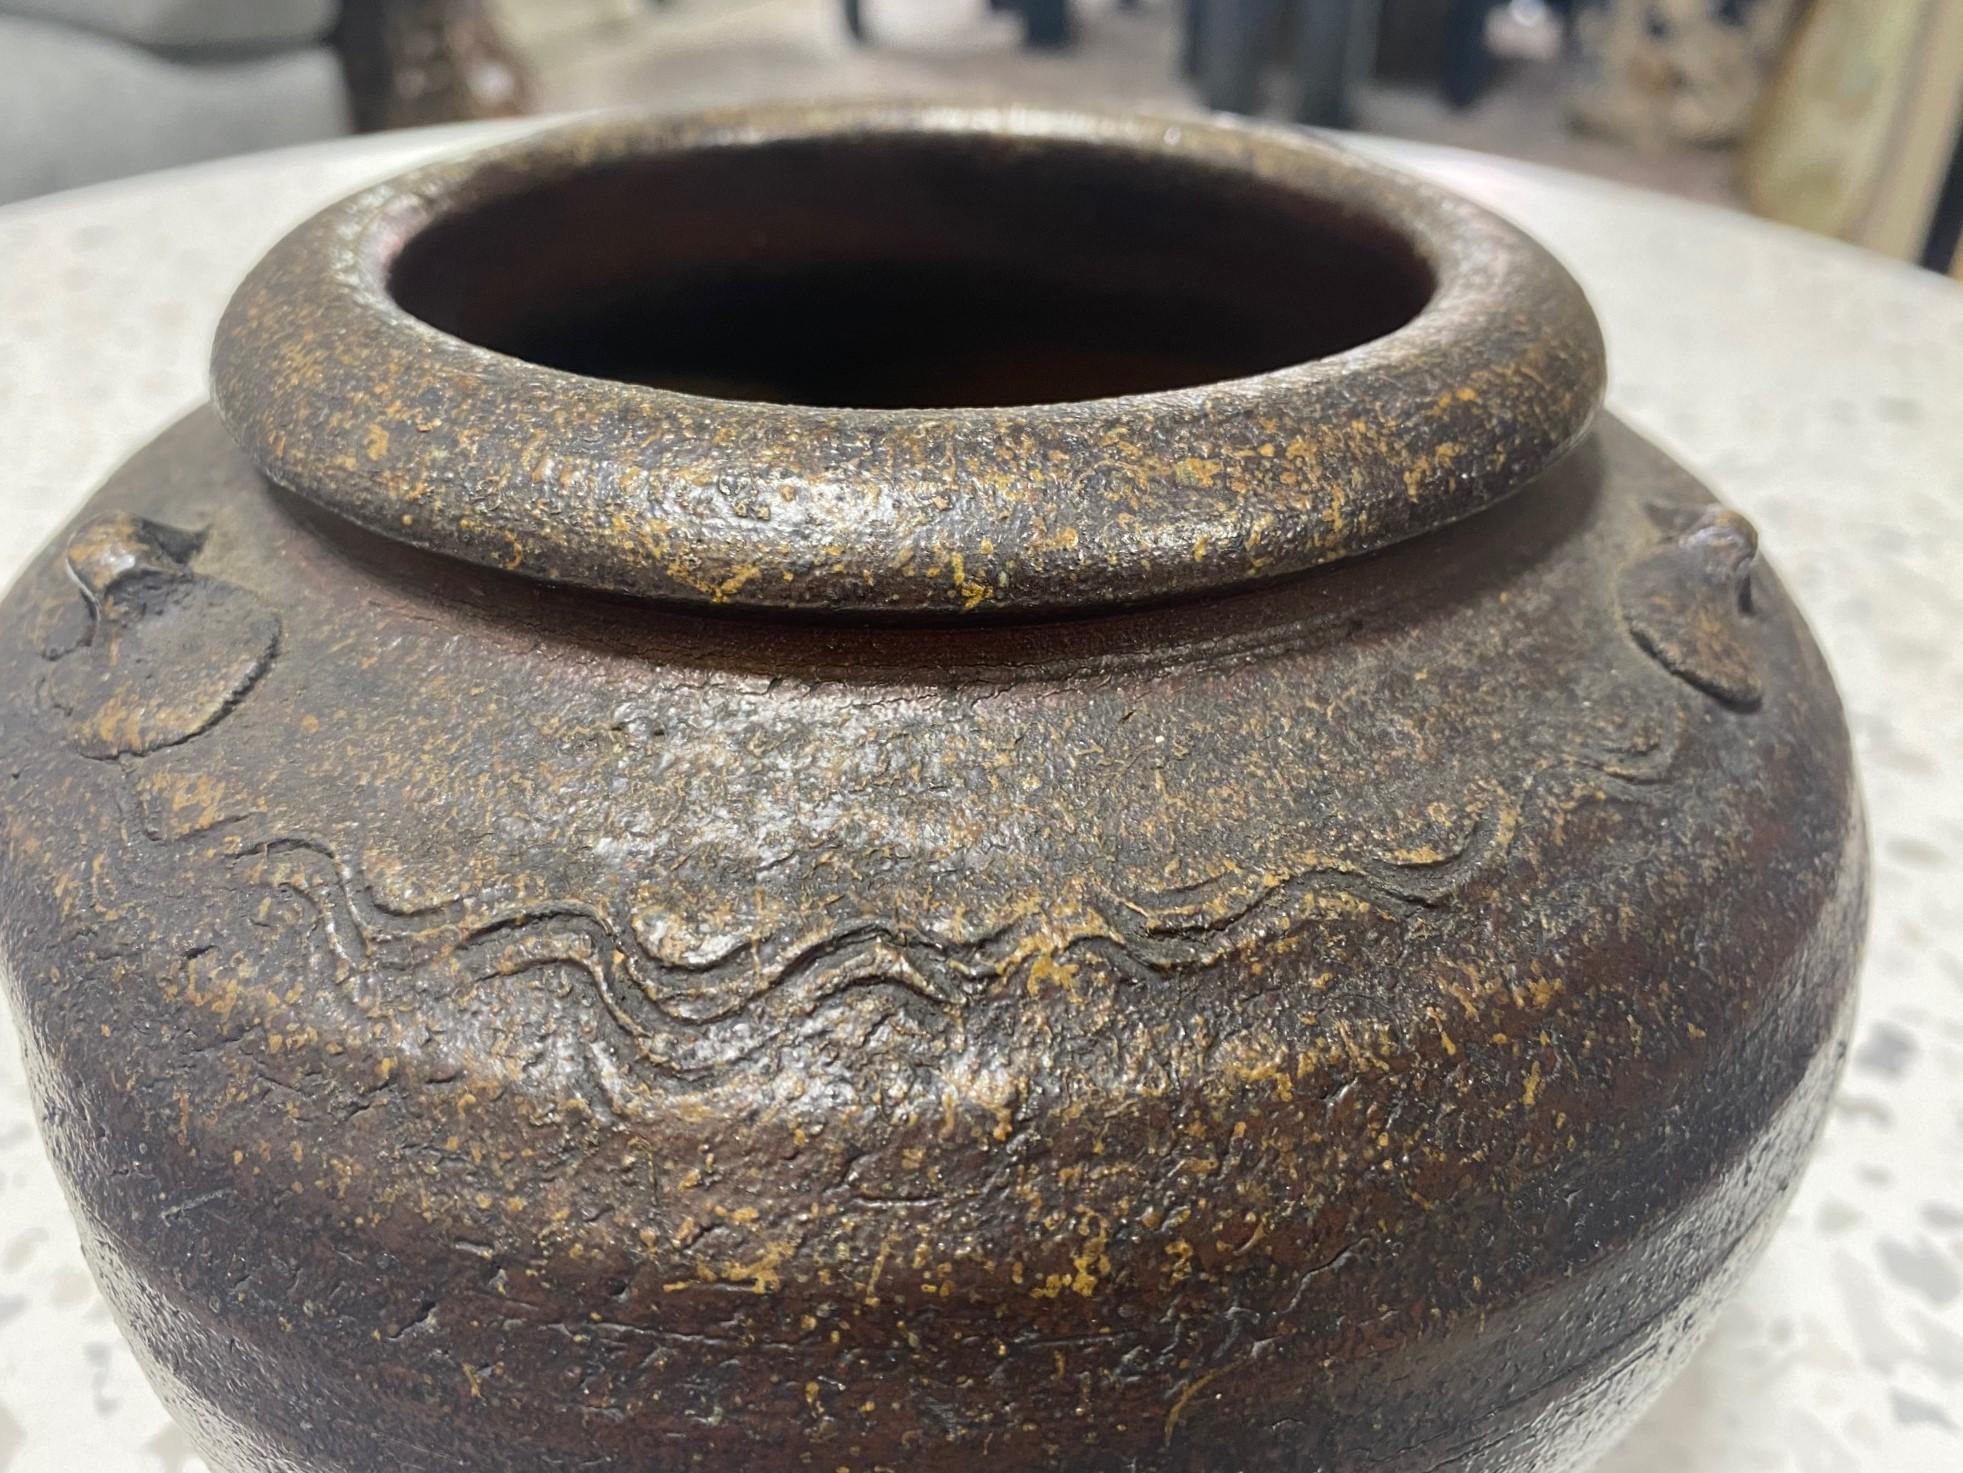 Kaneshige Toyo National Treasure Signed Japanese Bizen Pottery Tsubo Jar Vase For Sale 1